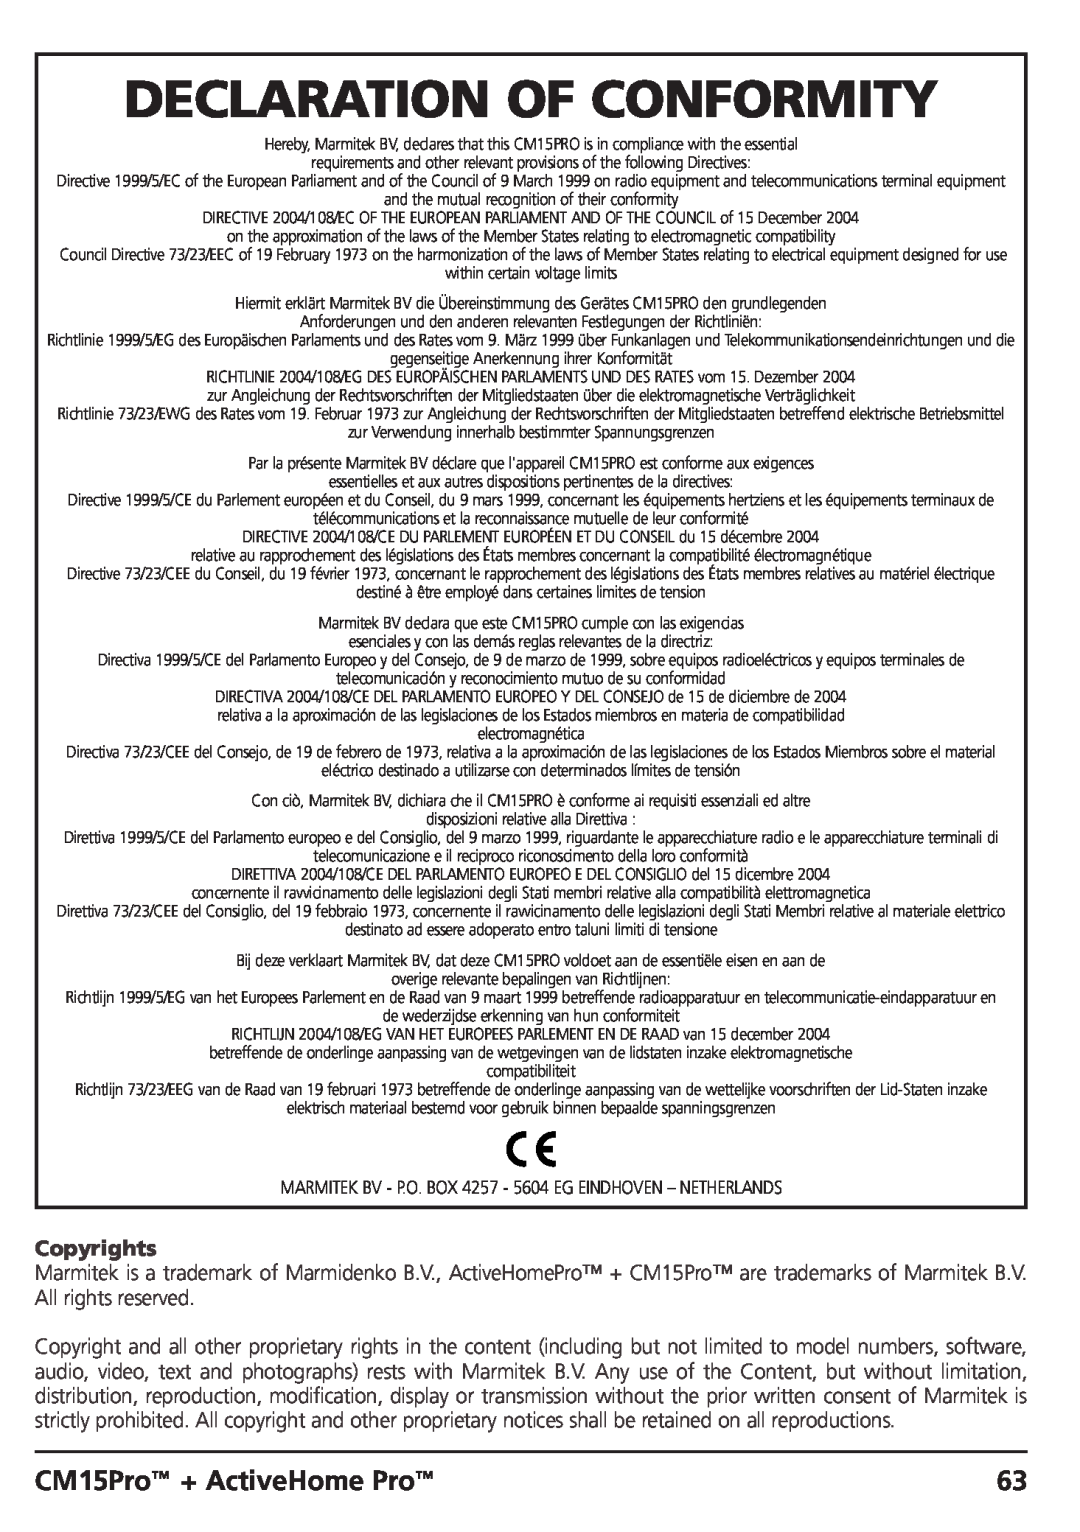 Marmitek CM15PRO manual Declaration Of Conformity, CM15Pro + ActiveHome Pro, Copyrights 